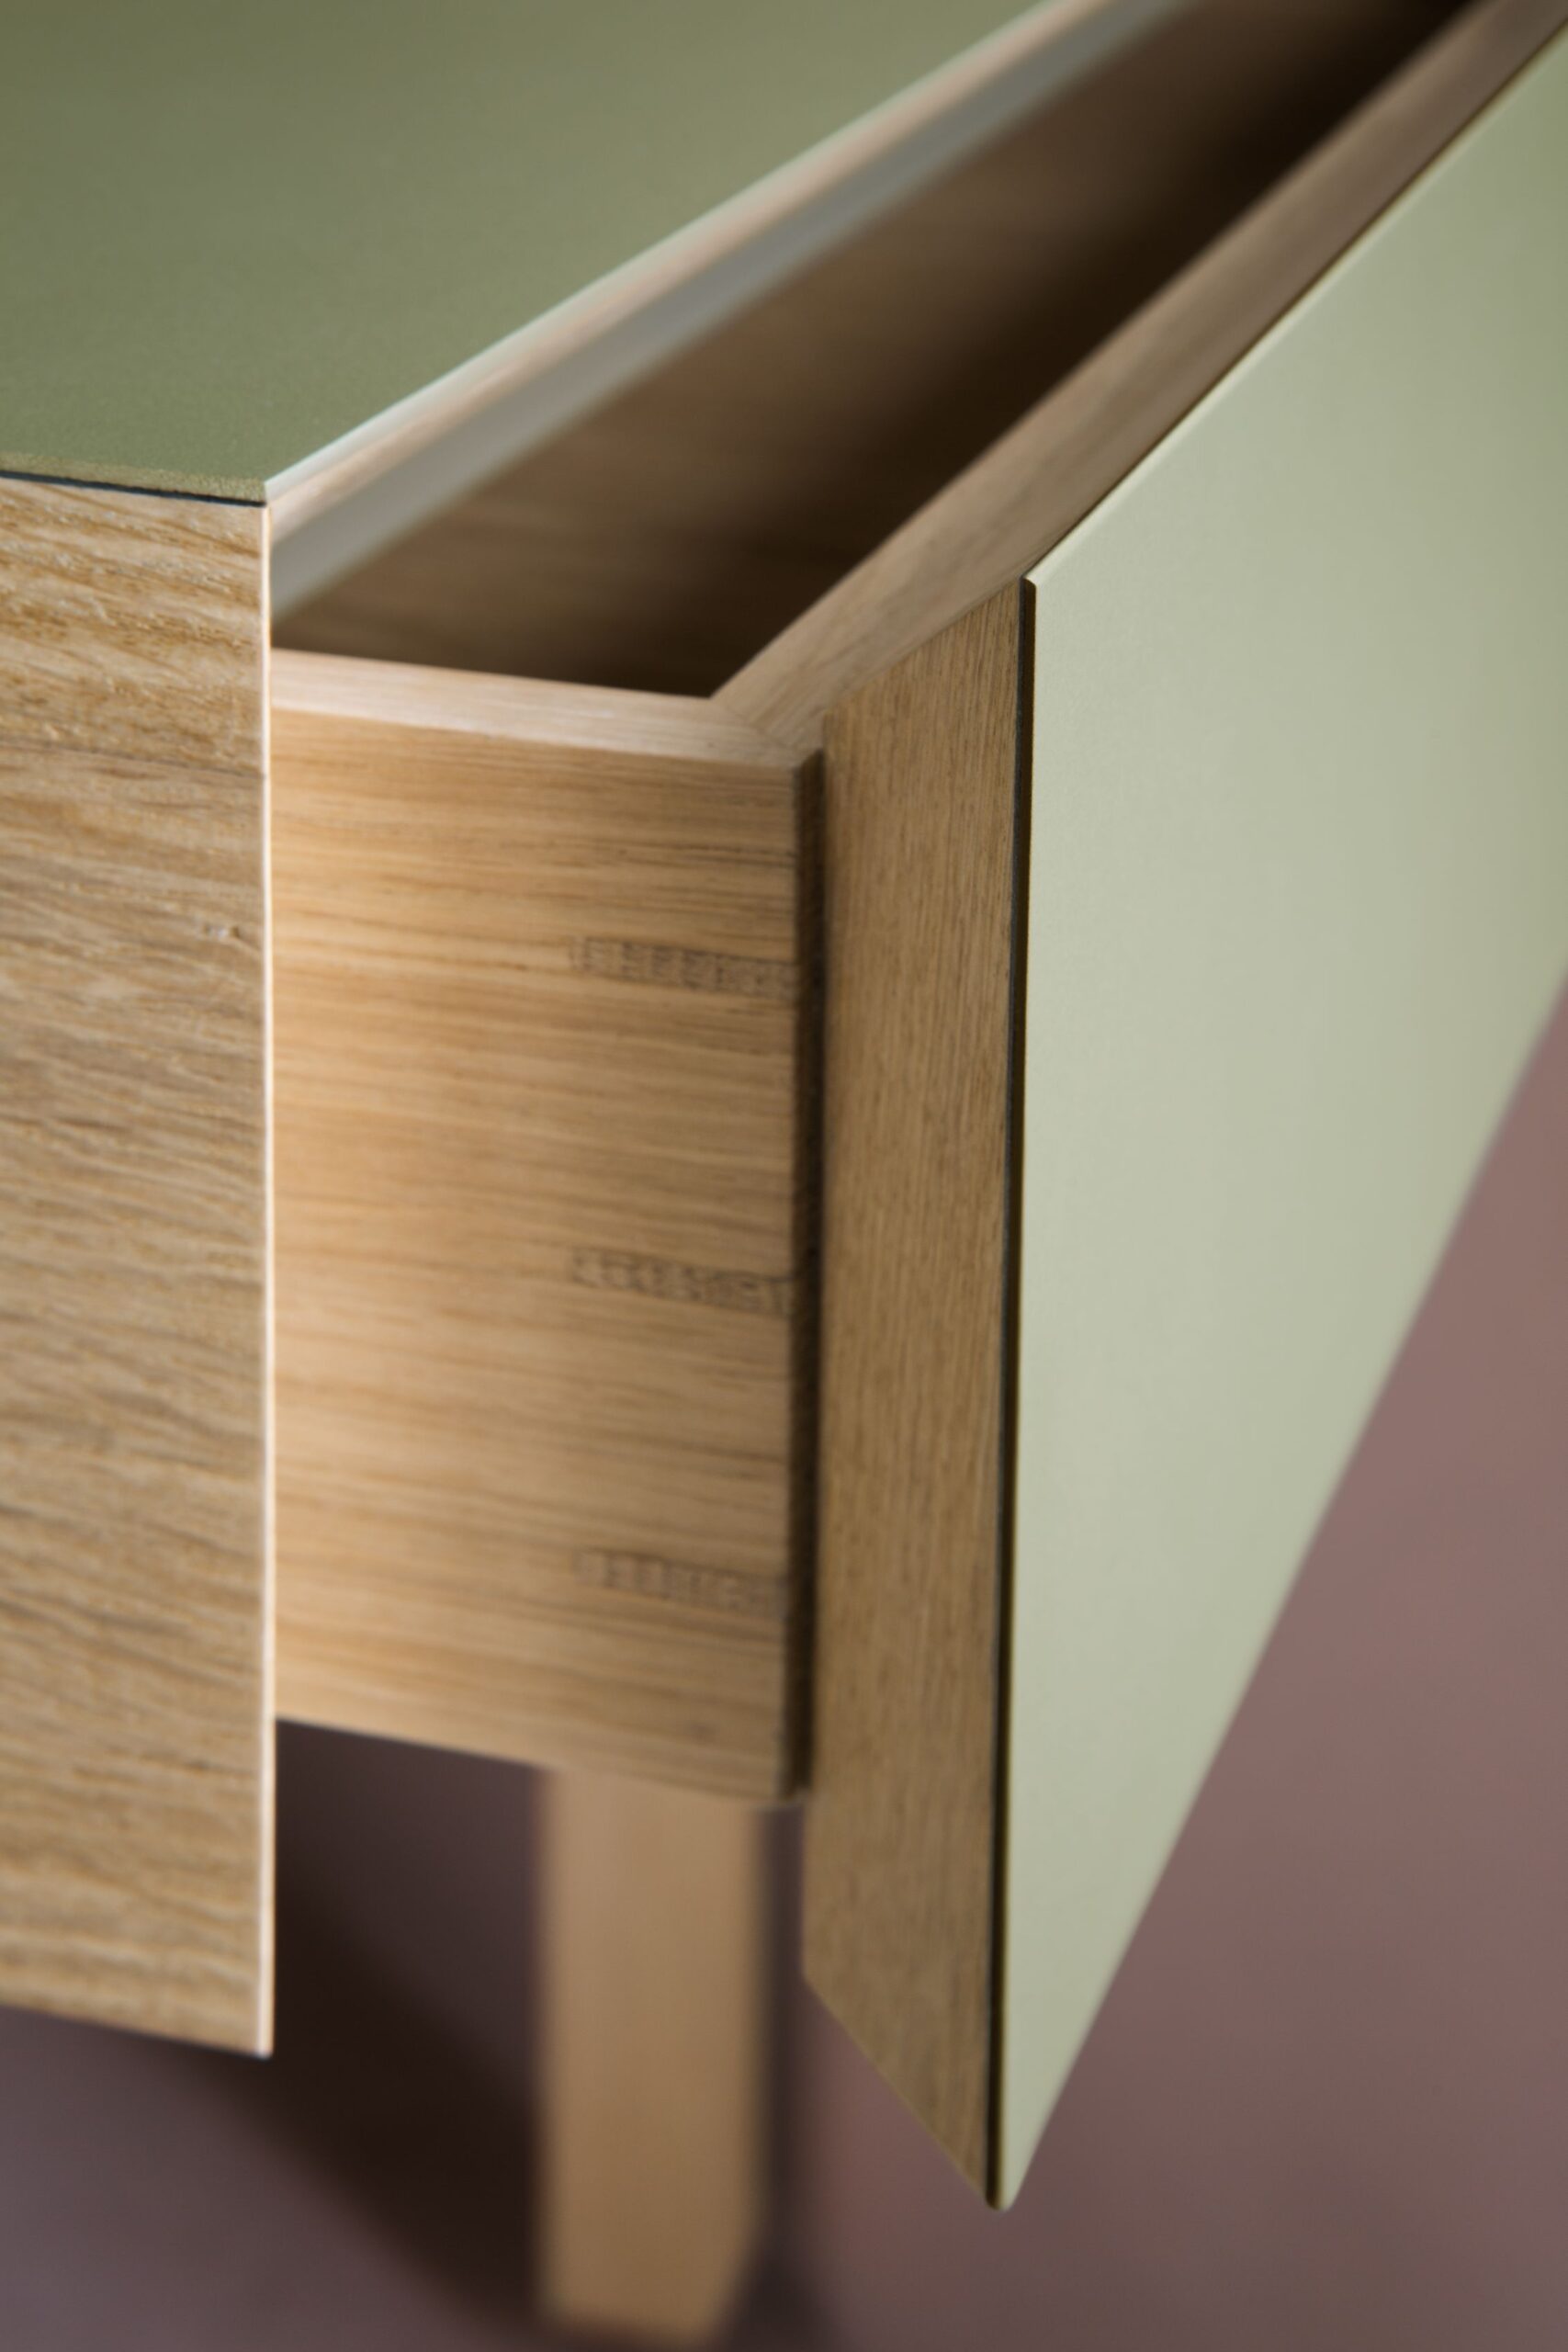 High Resolution-Furniture_Linoleum_4184_desk5_detail_drawer